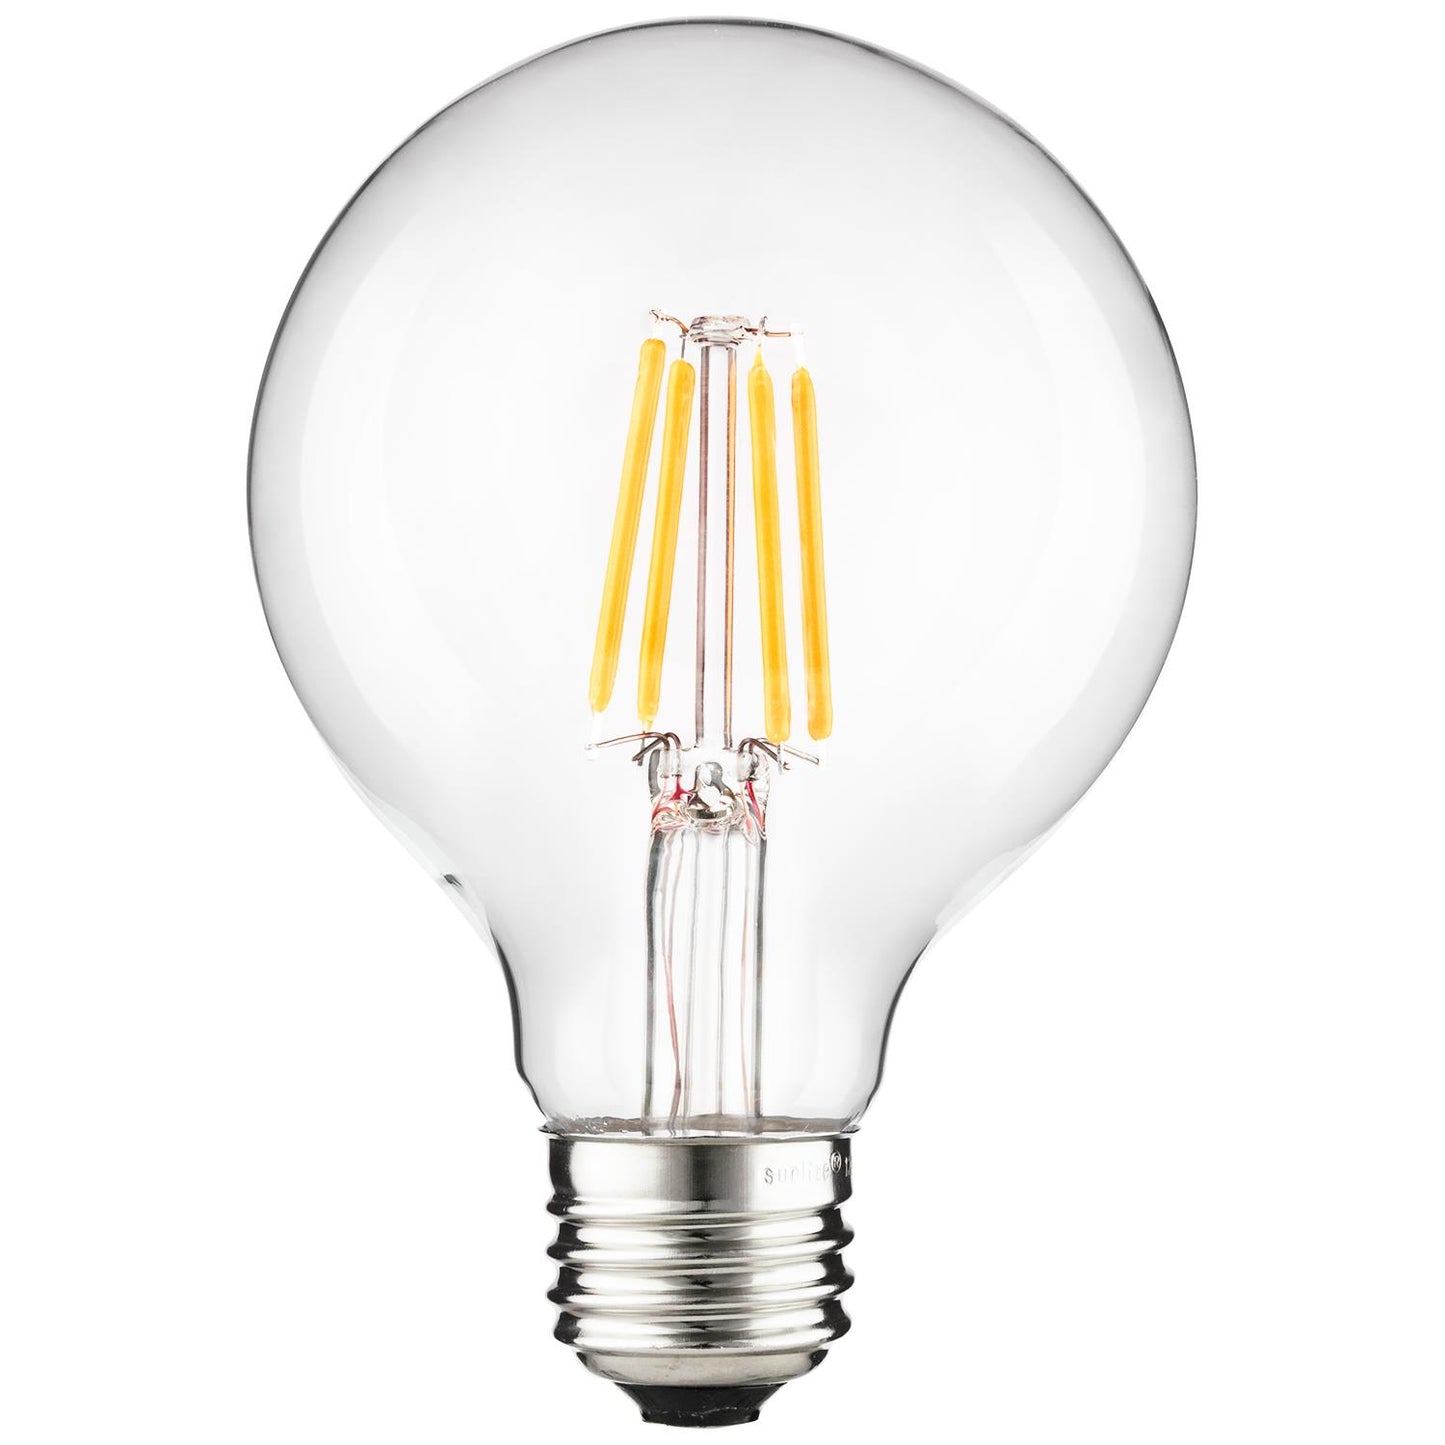 Sunlite 81117 LED Filament G25 Globe 6-Watt (75 Watt Equivalent) Clear Dimmable Light Bulb, 5000K - Super White